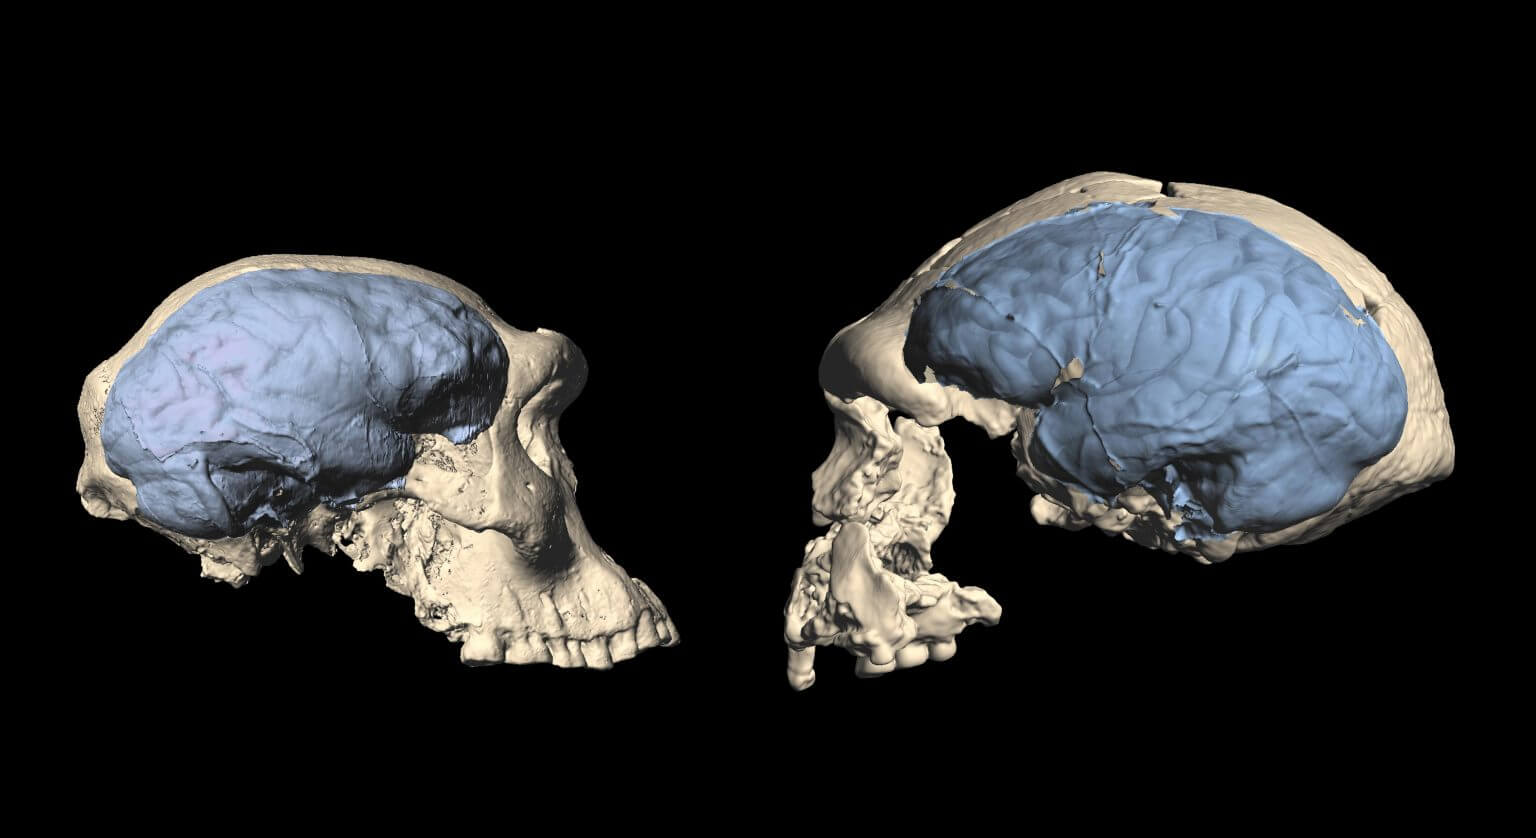 גולגולת של אחד ממיני ההומנינים המוקדמים בגיאורגיה - מוח דמוי-קוף (משמאל) ומאינדונזיה מוח דמוי-אדם (מימין). קרדיט: מ. פונס דה לאון, וצ' זוליקופר, אוניברסיטת ציריך UZH